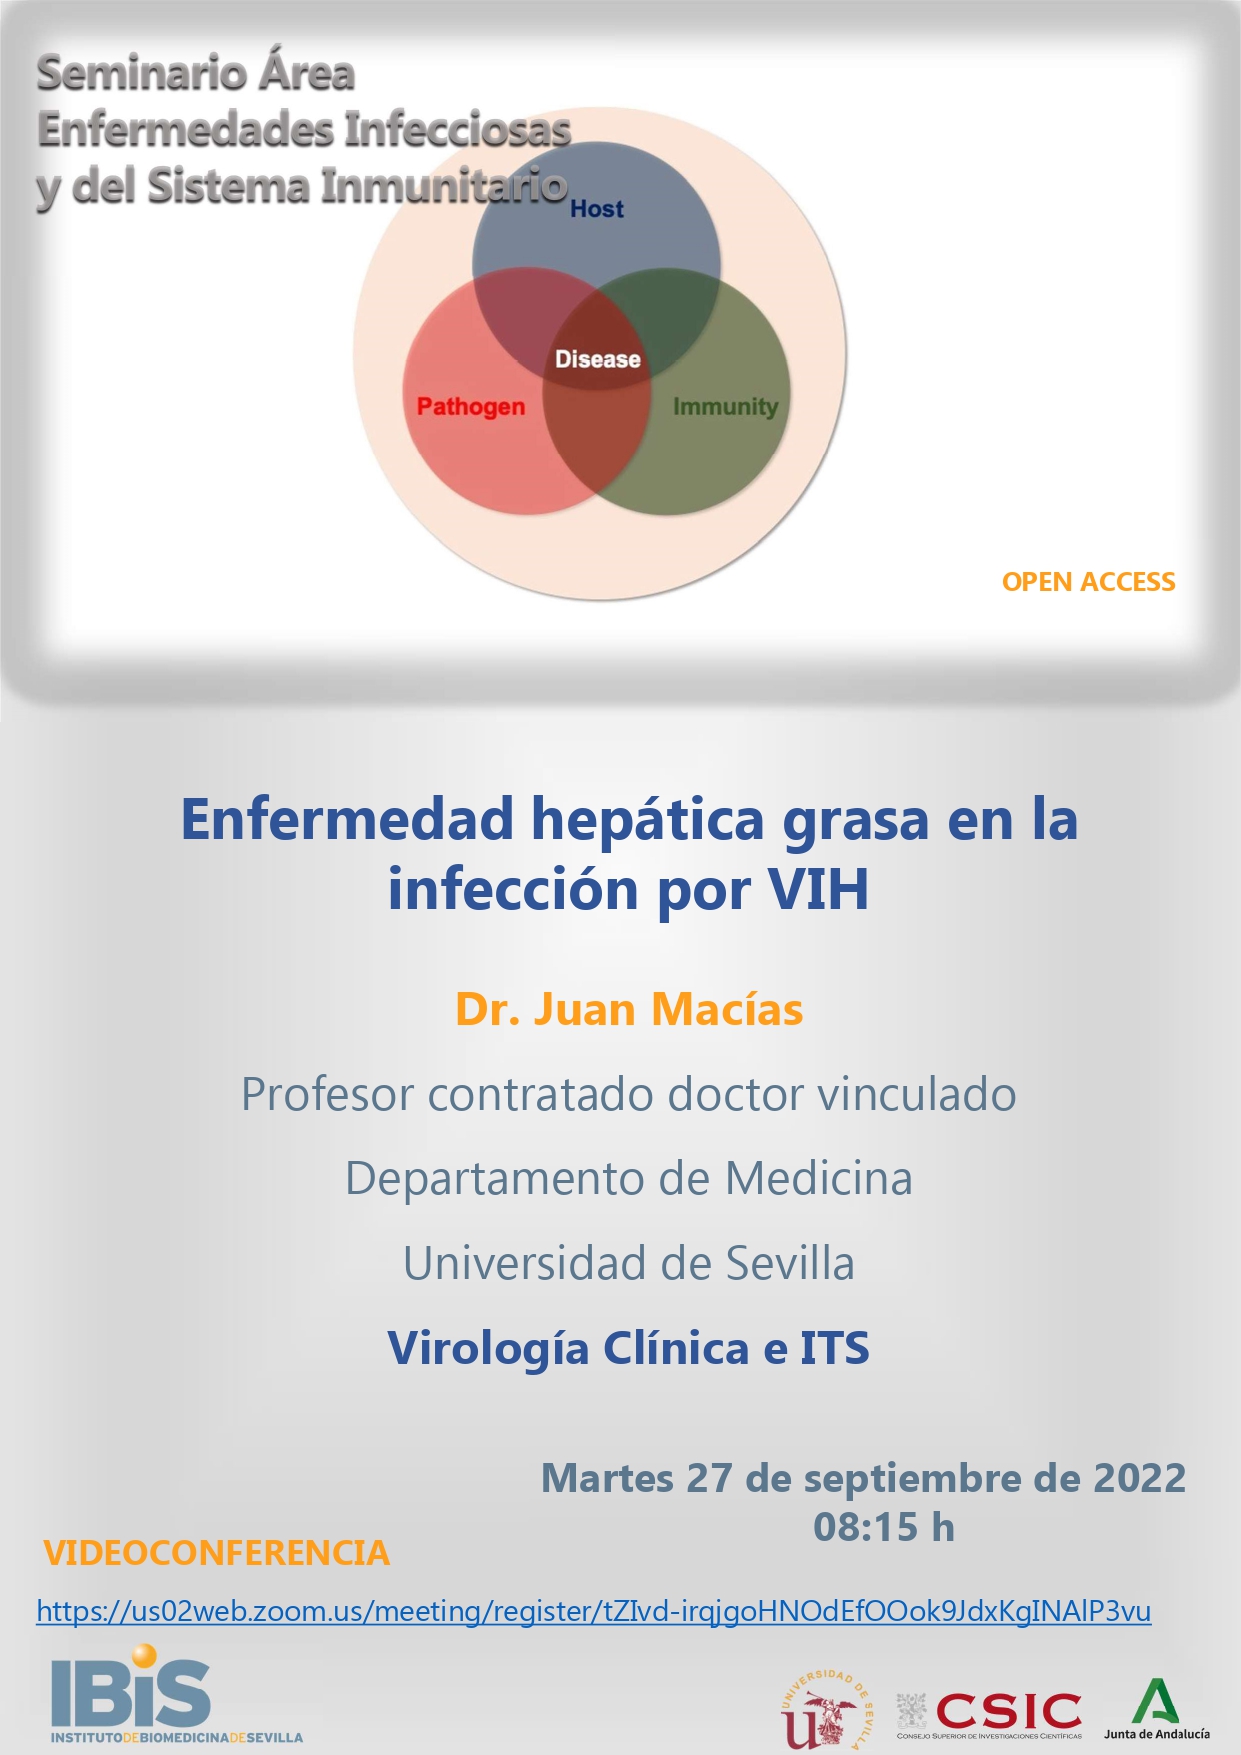 Poster: Enfermedad hepática grasa en la infección por VIH